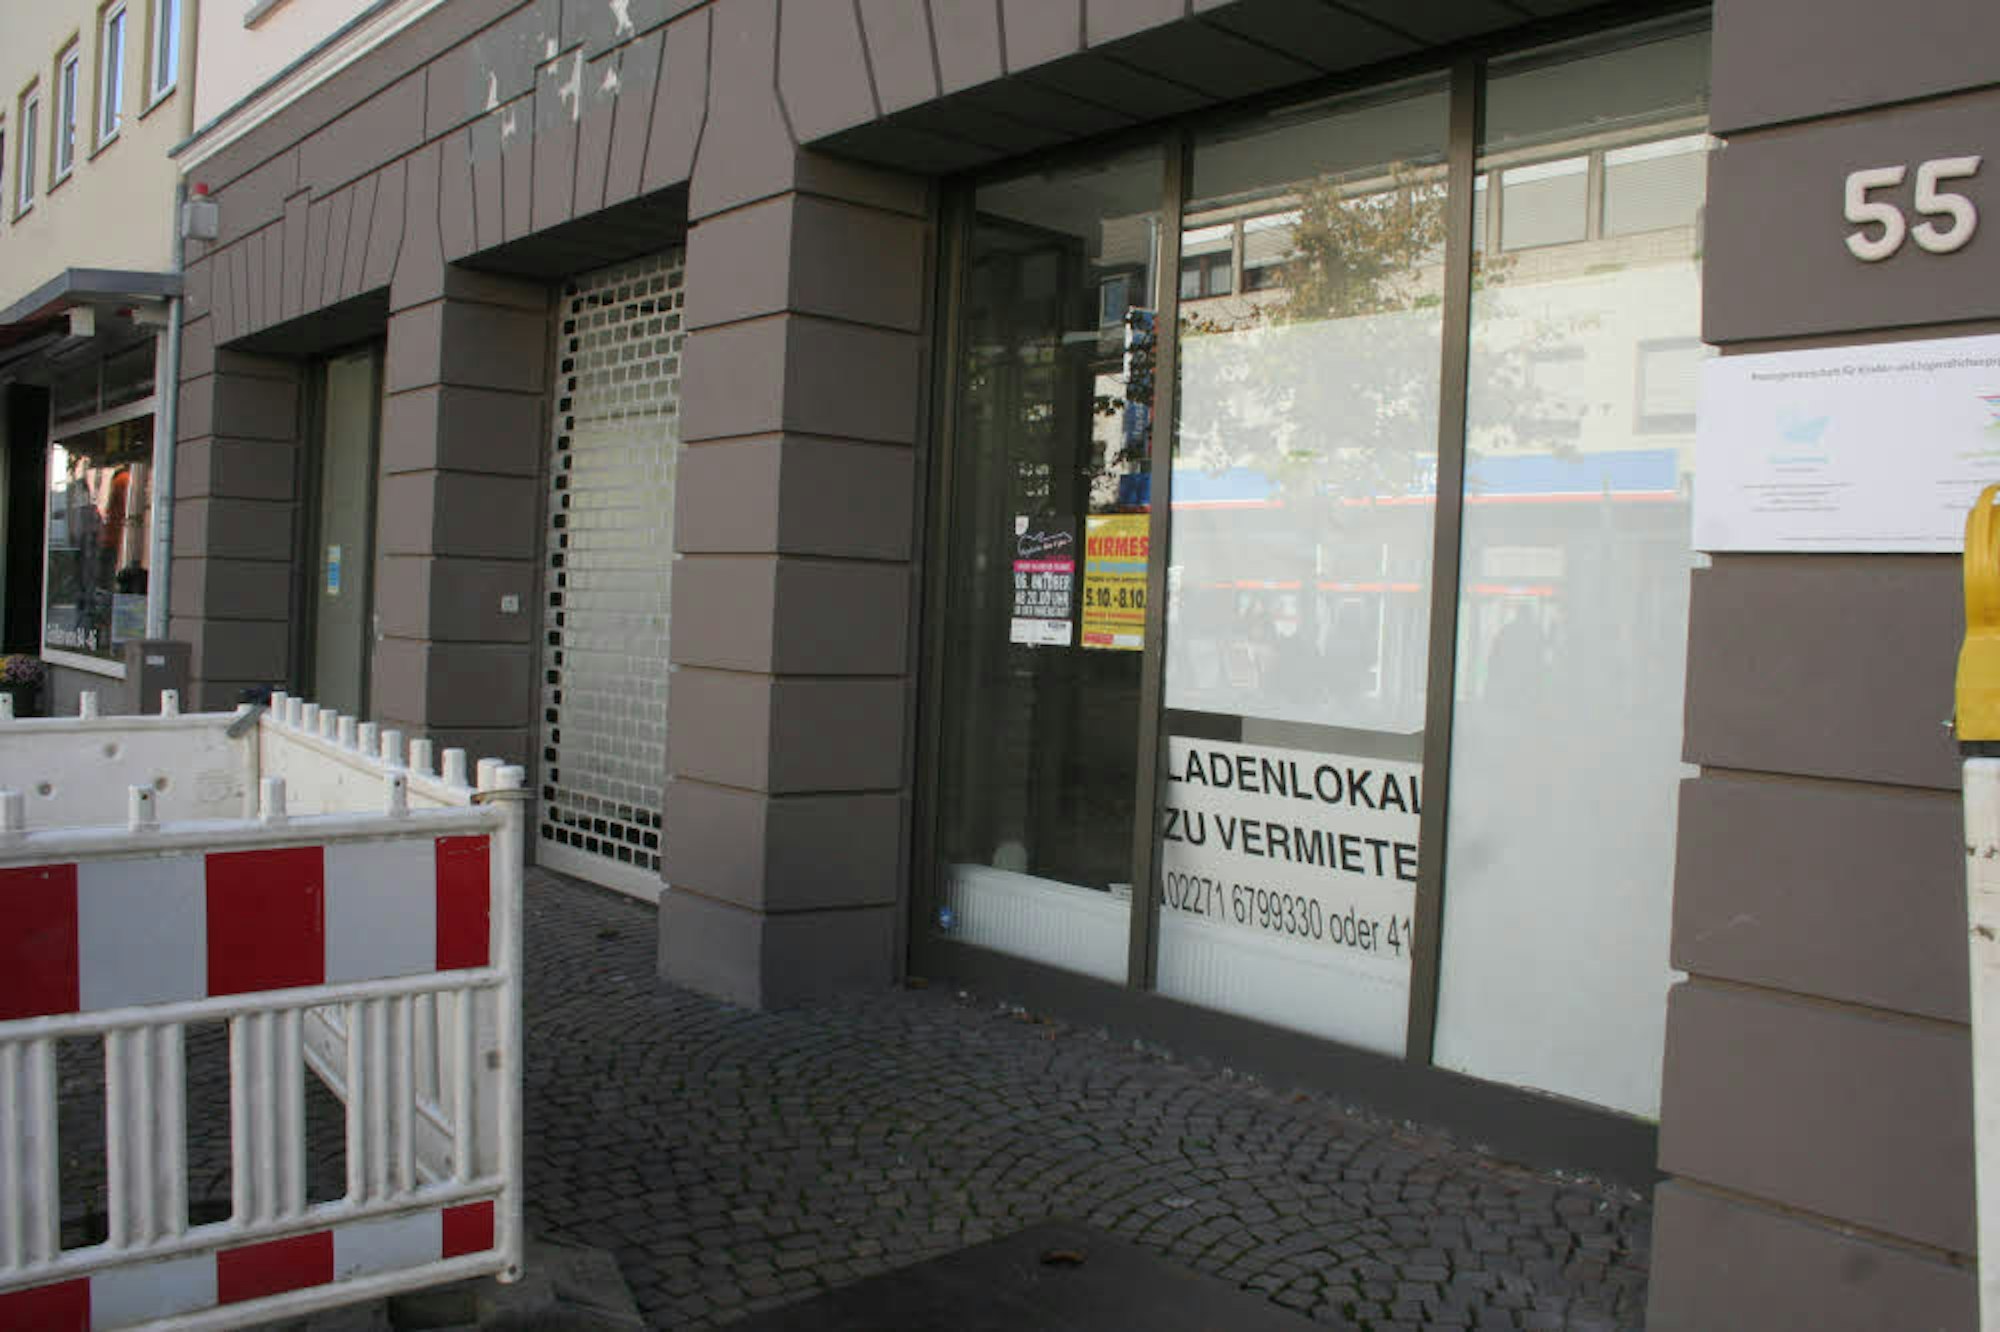 Karge, weiße Wände und verriegelte Türen: Viele Geschäfte in Bergheim geben kein schönes Bild ab.